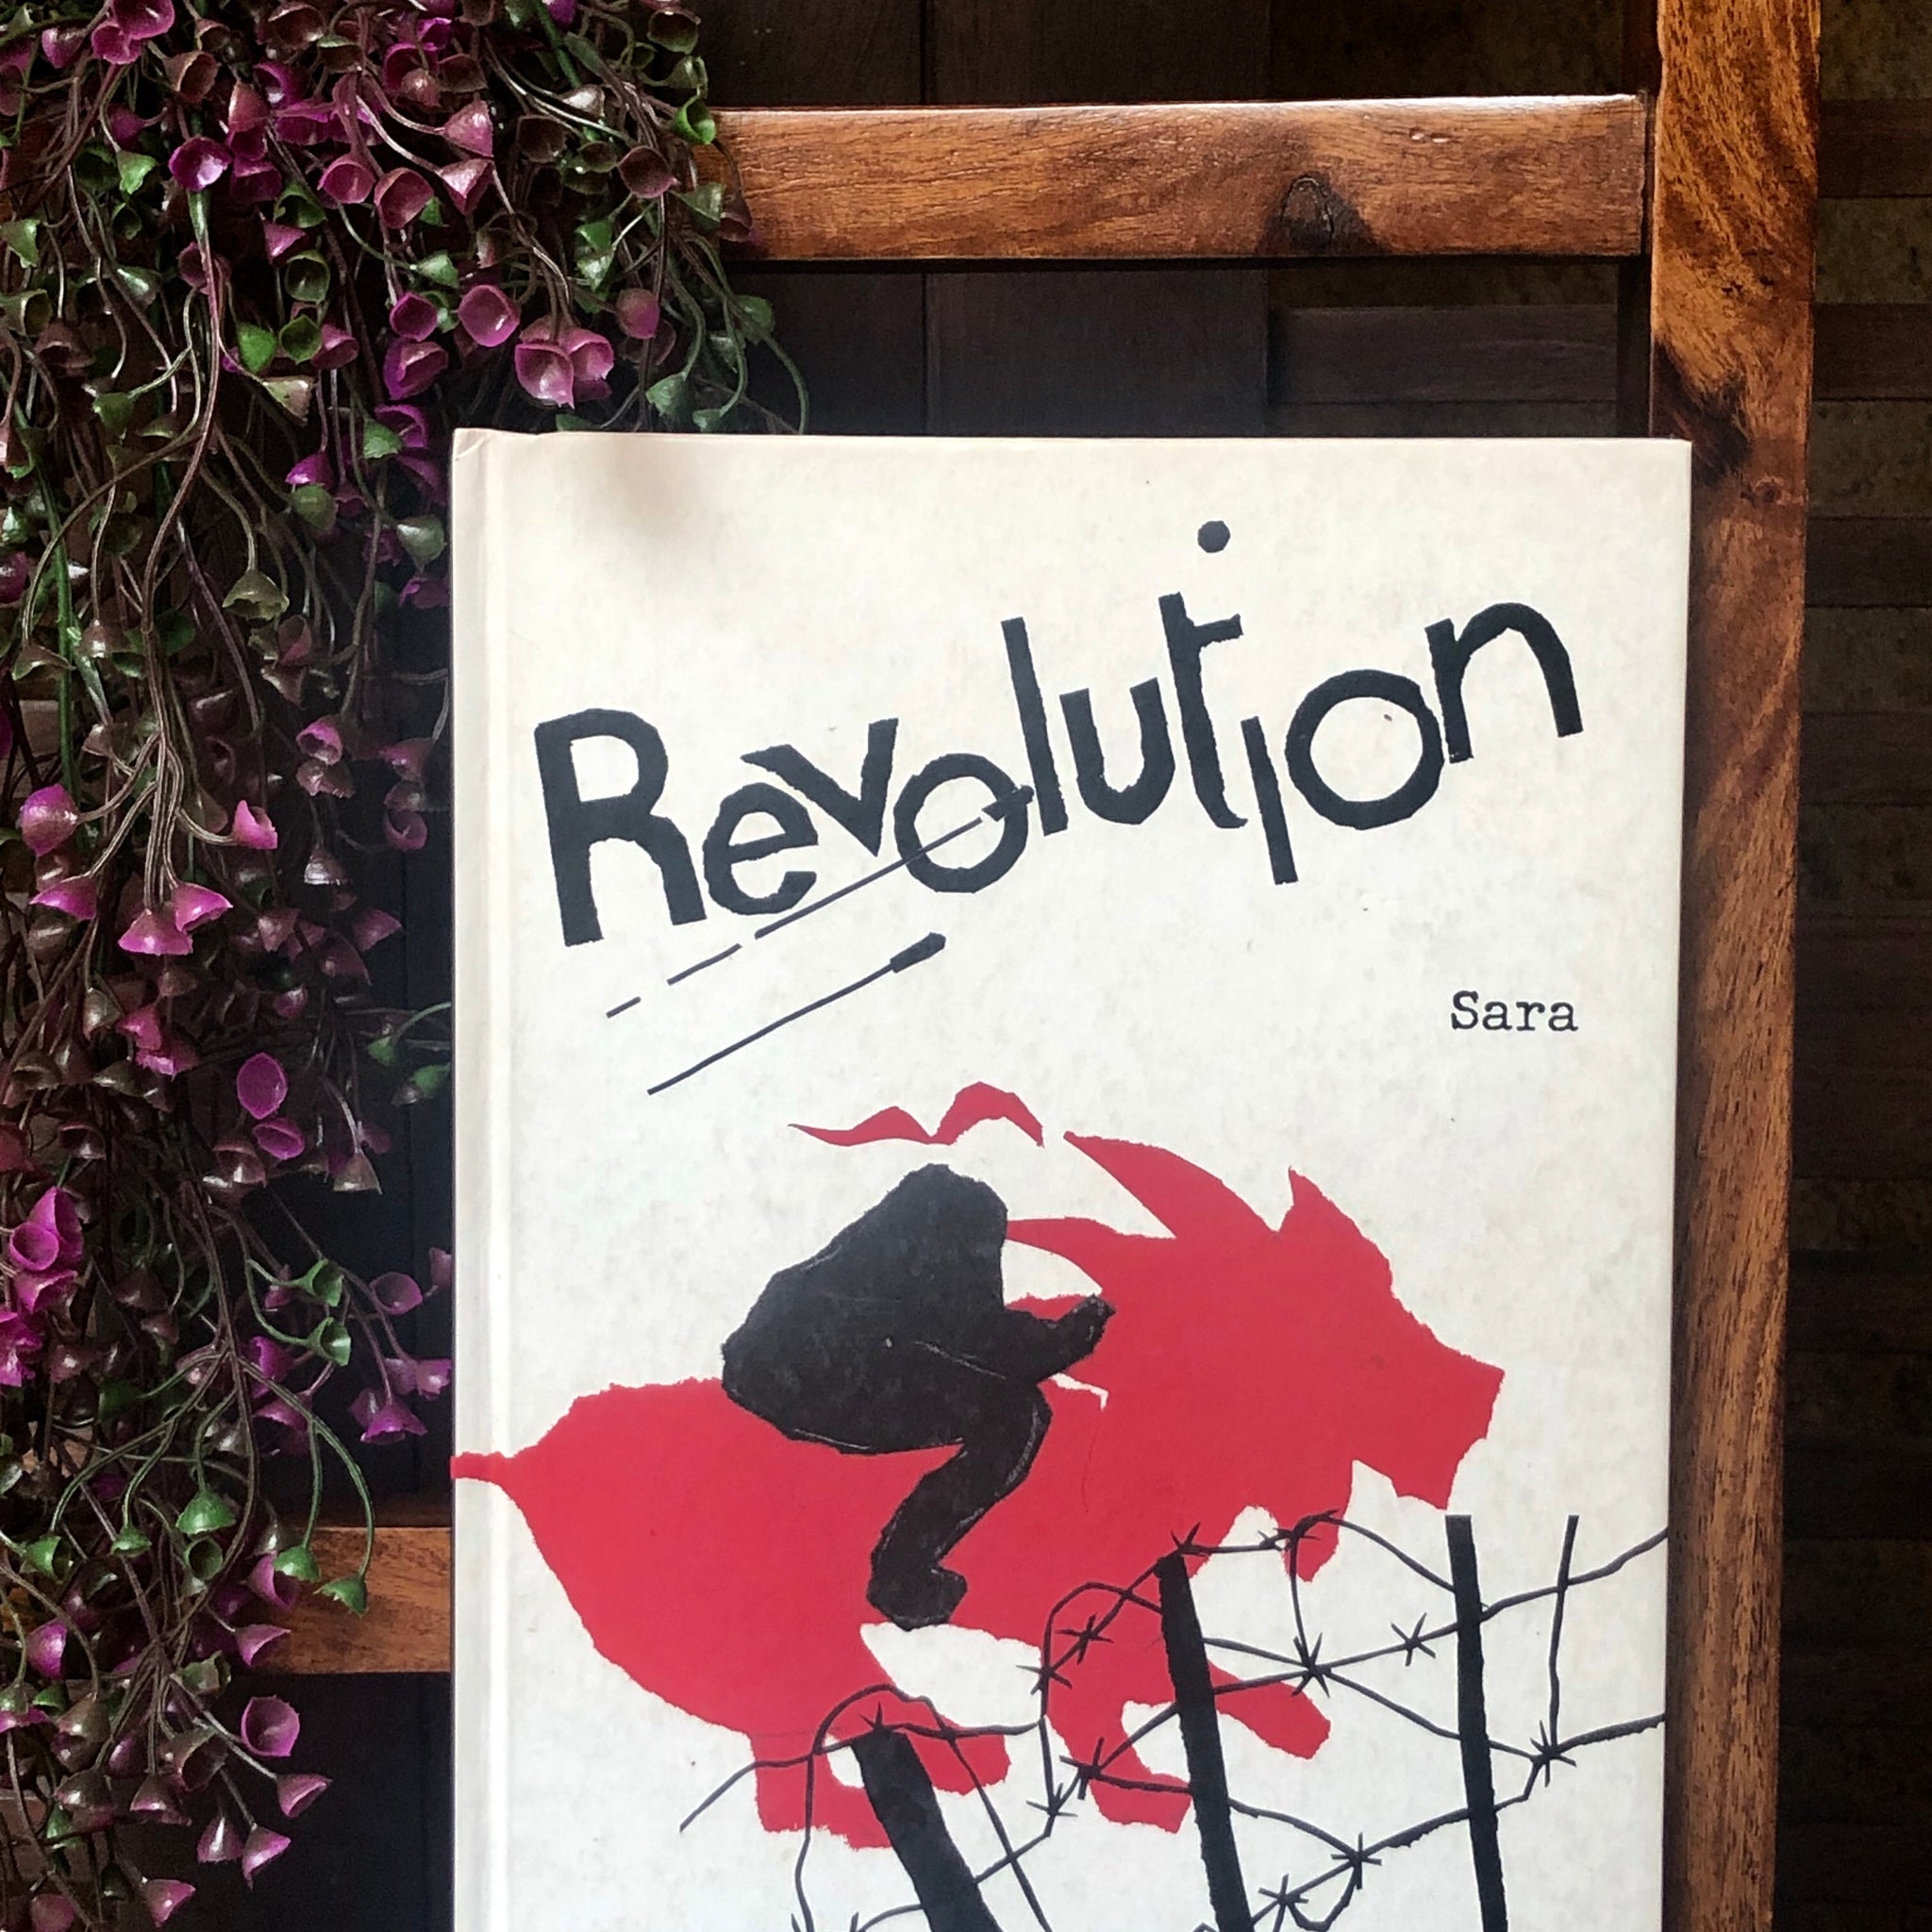 book bliss-revolution